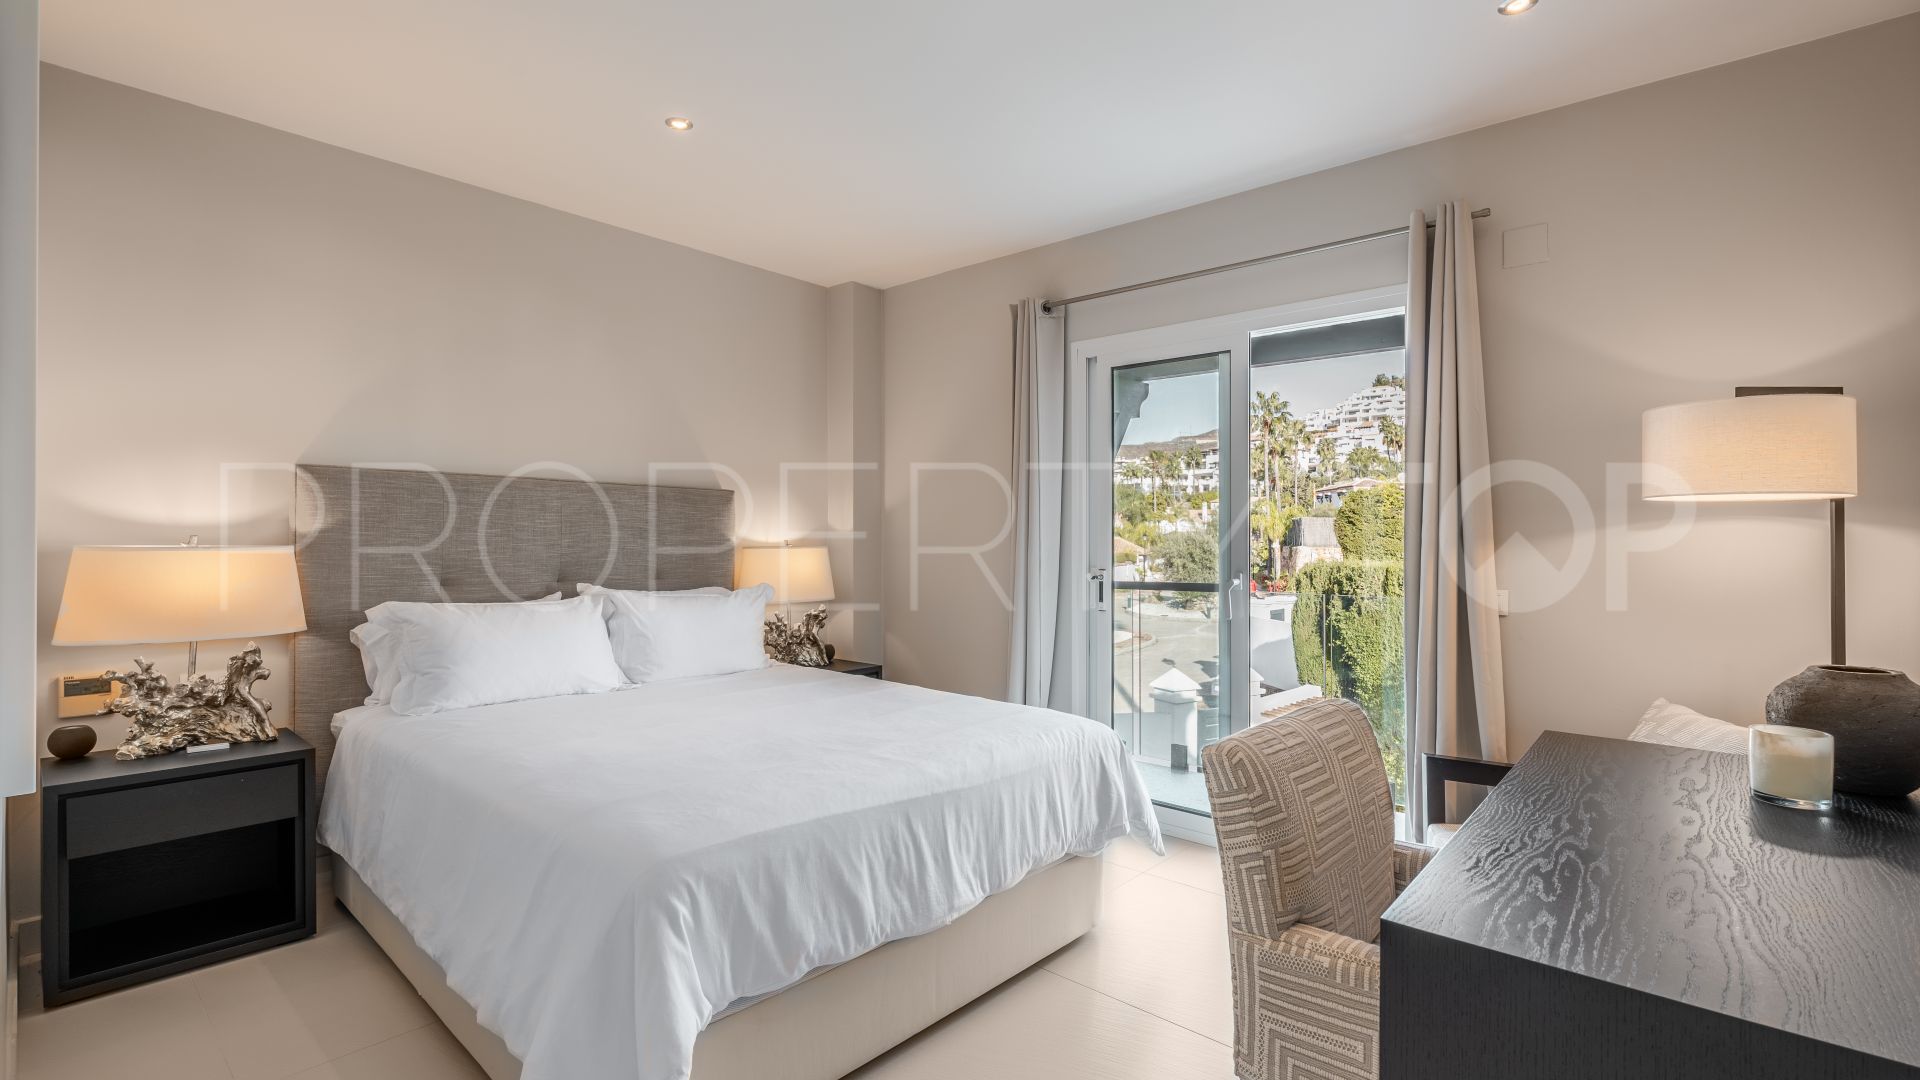 Marbella Country Club, villa con 4 dormitorios en venta